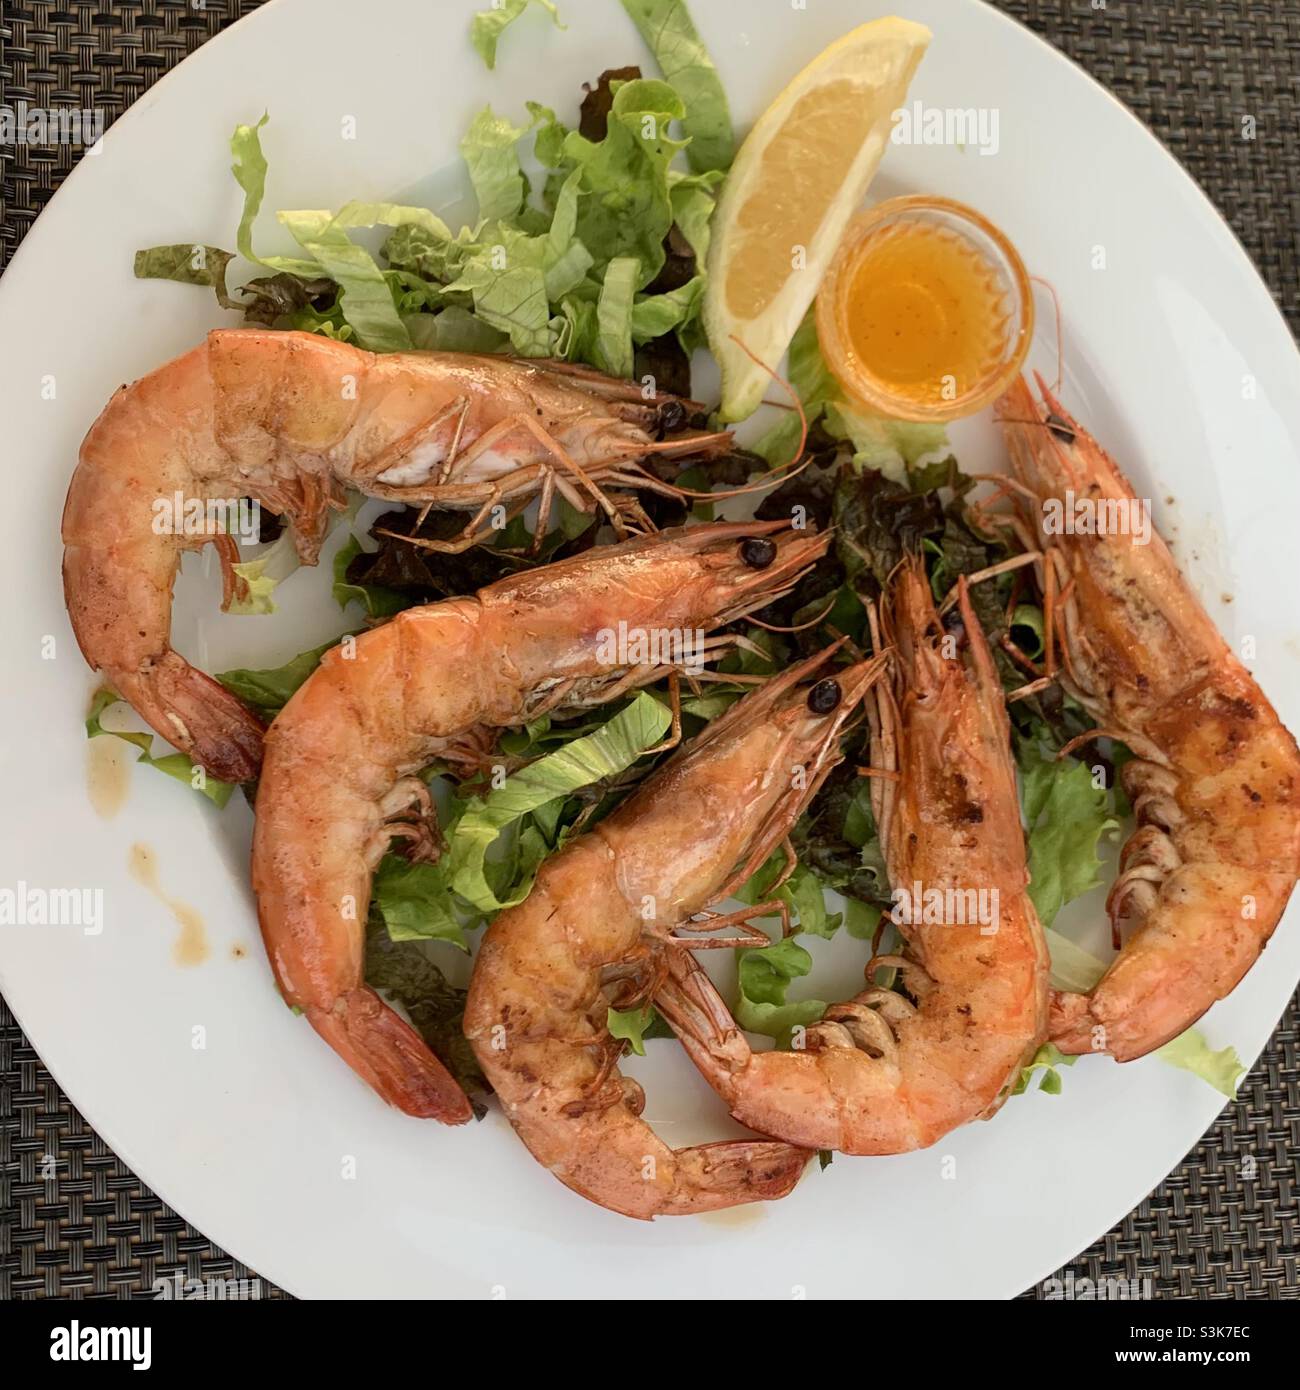 Une assiette de grosses crevettes avec une tranche de huard.Régime méditerranéen.Fruits de mer sains.Fruits de mer frais.Allié des fruits de mer Banque D'Images